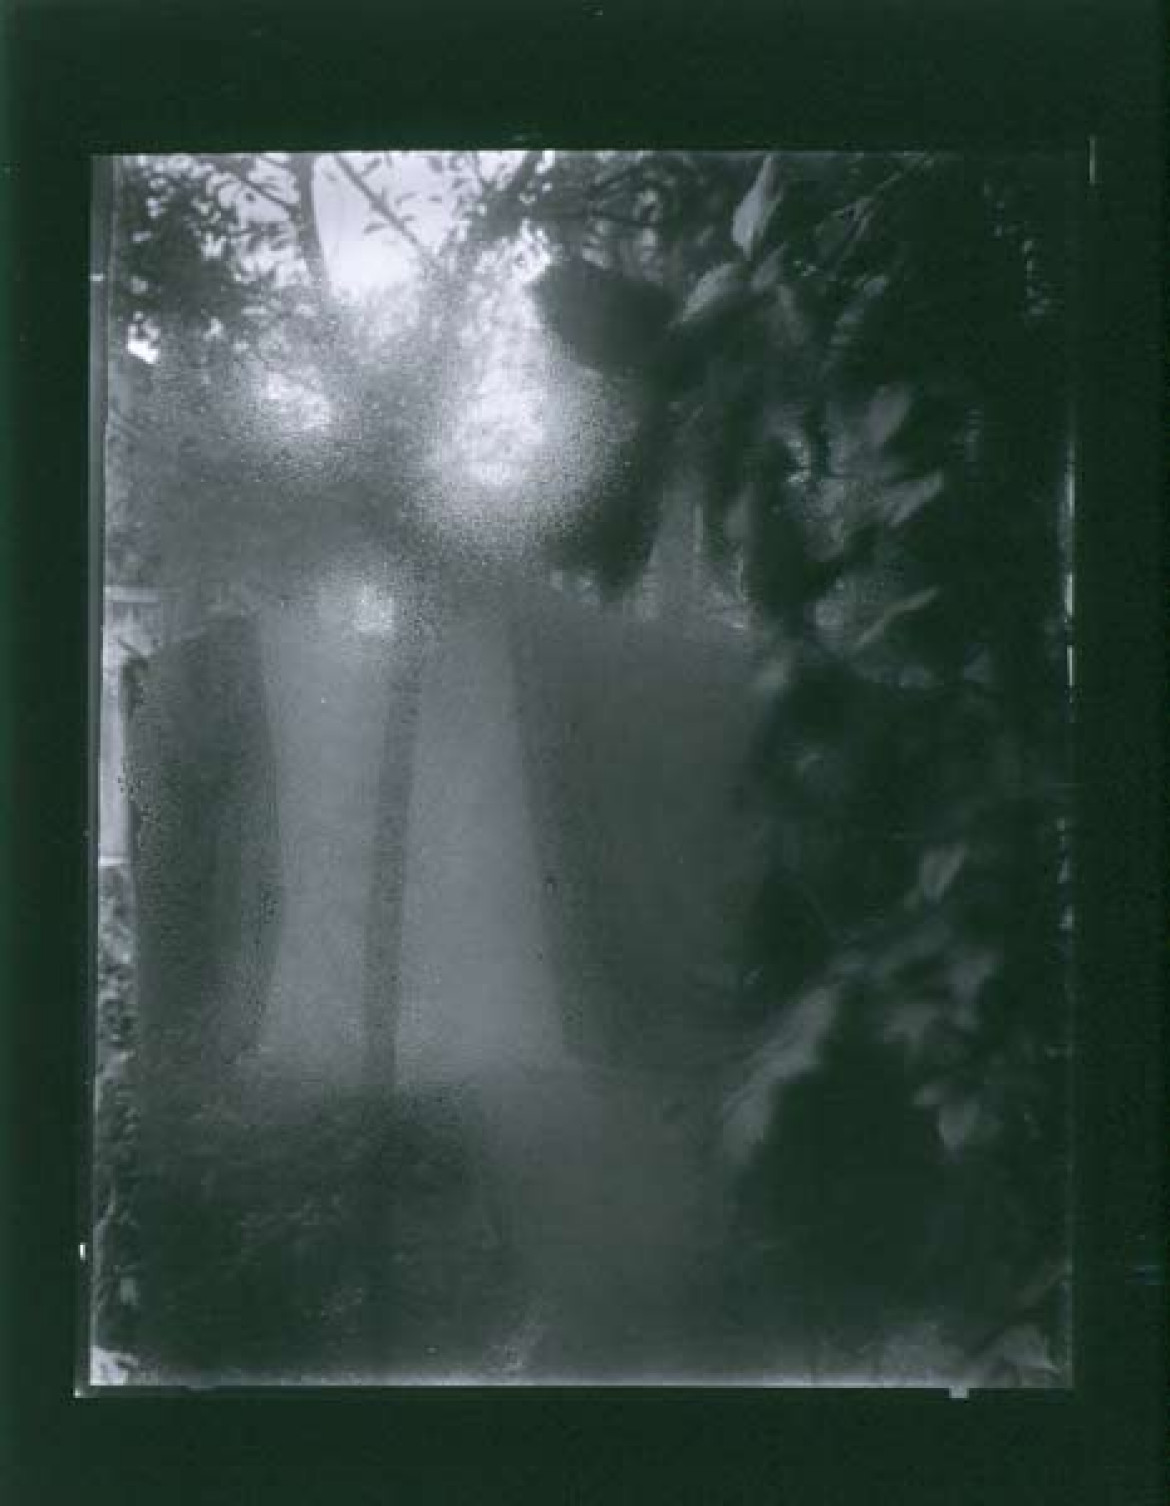 fot. Josef Sudek "Okno mojego atelier, Poniedziałek wielkanocny", 1954